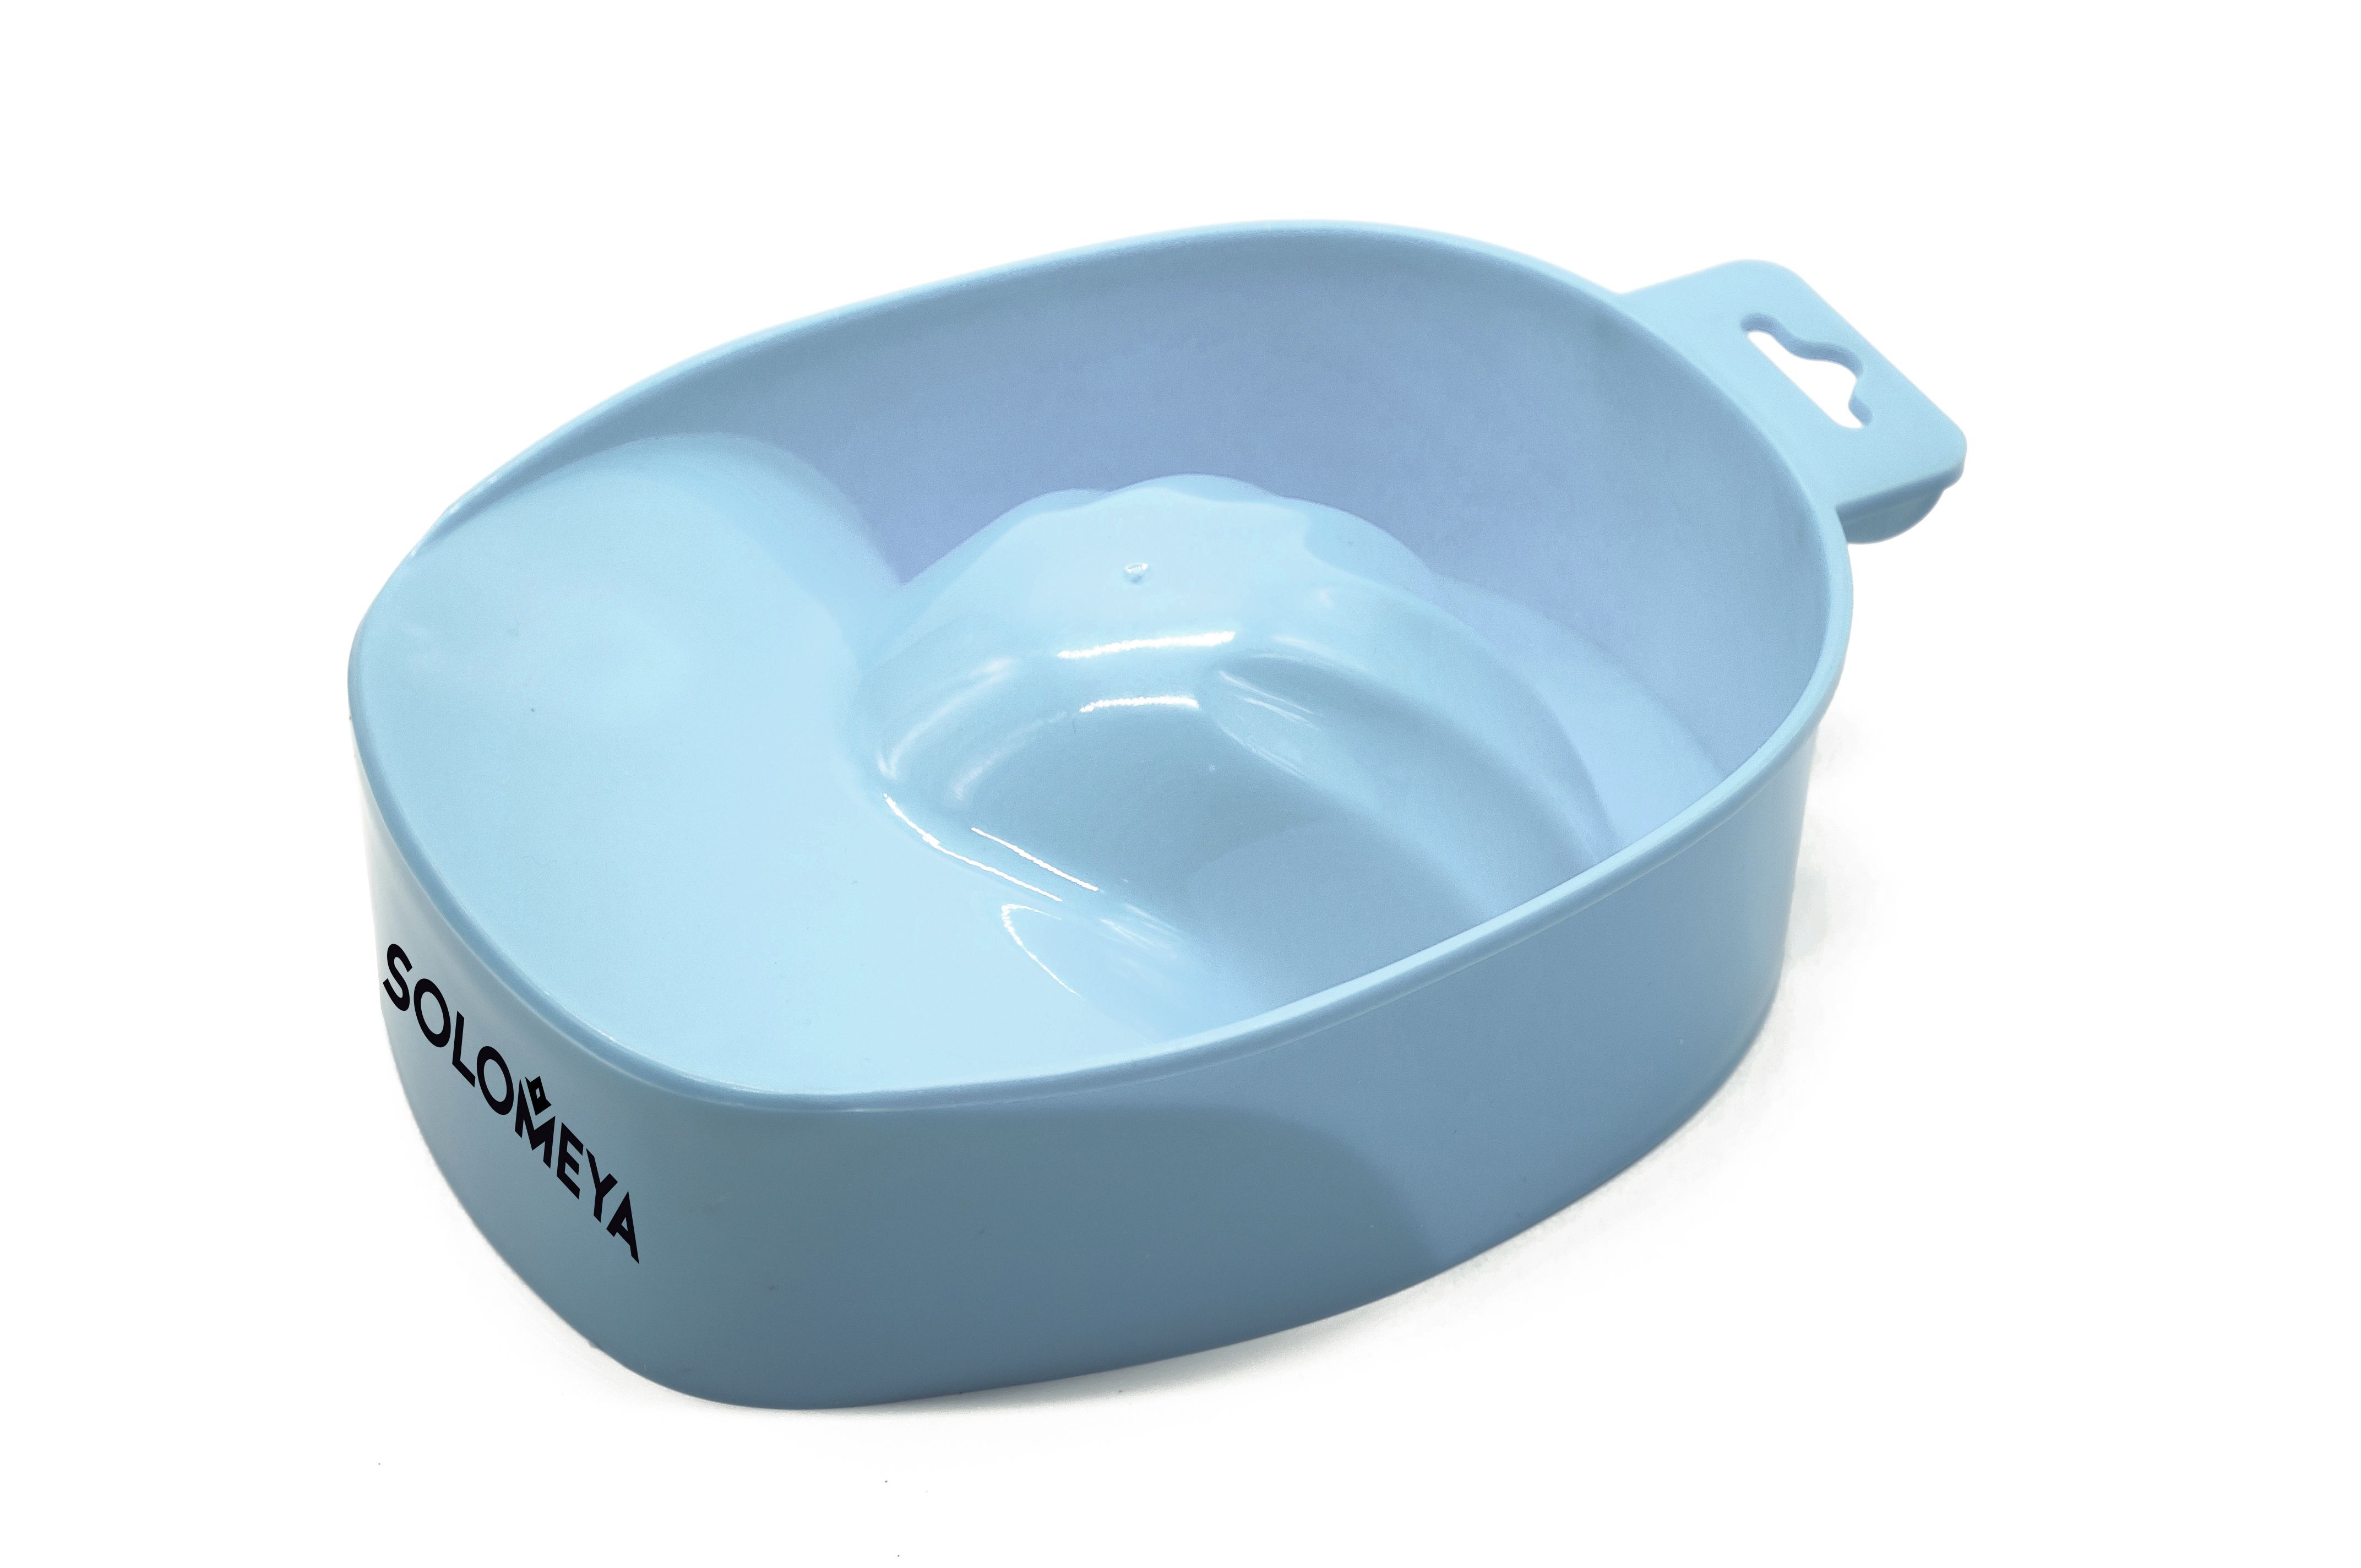 SOLOMEYA Ванночка для проведения процедуры маникюра Голубое небо / Manicure bowl Blue Sky